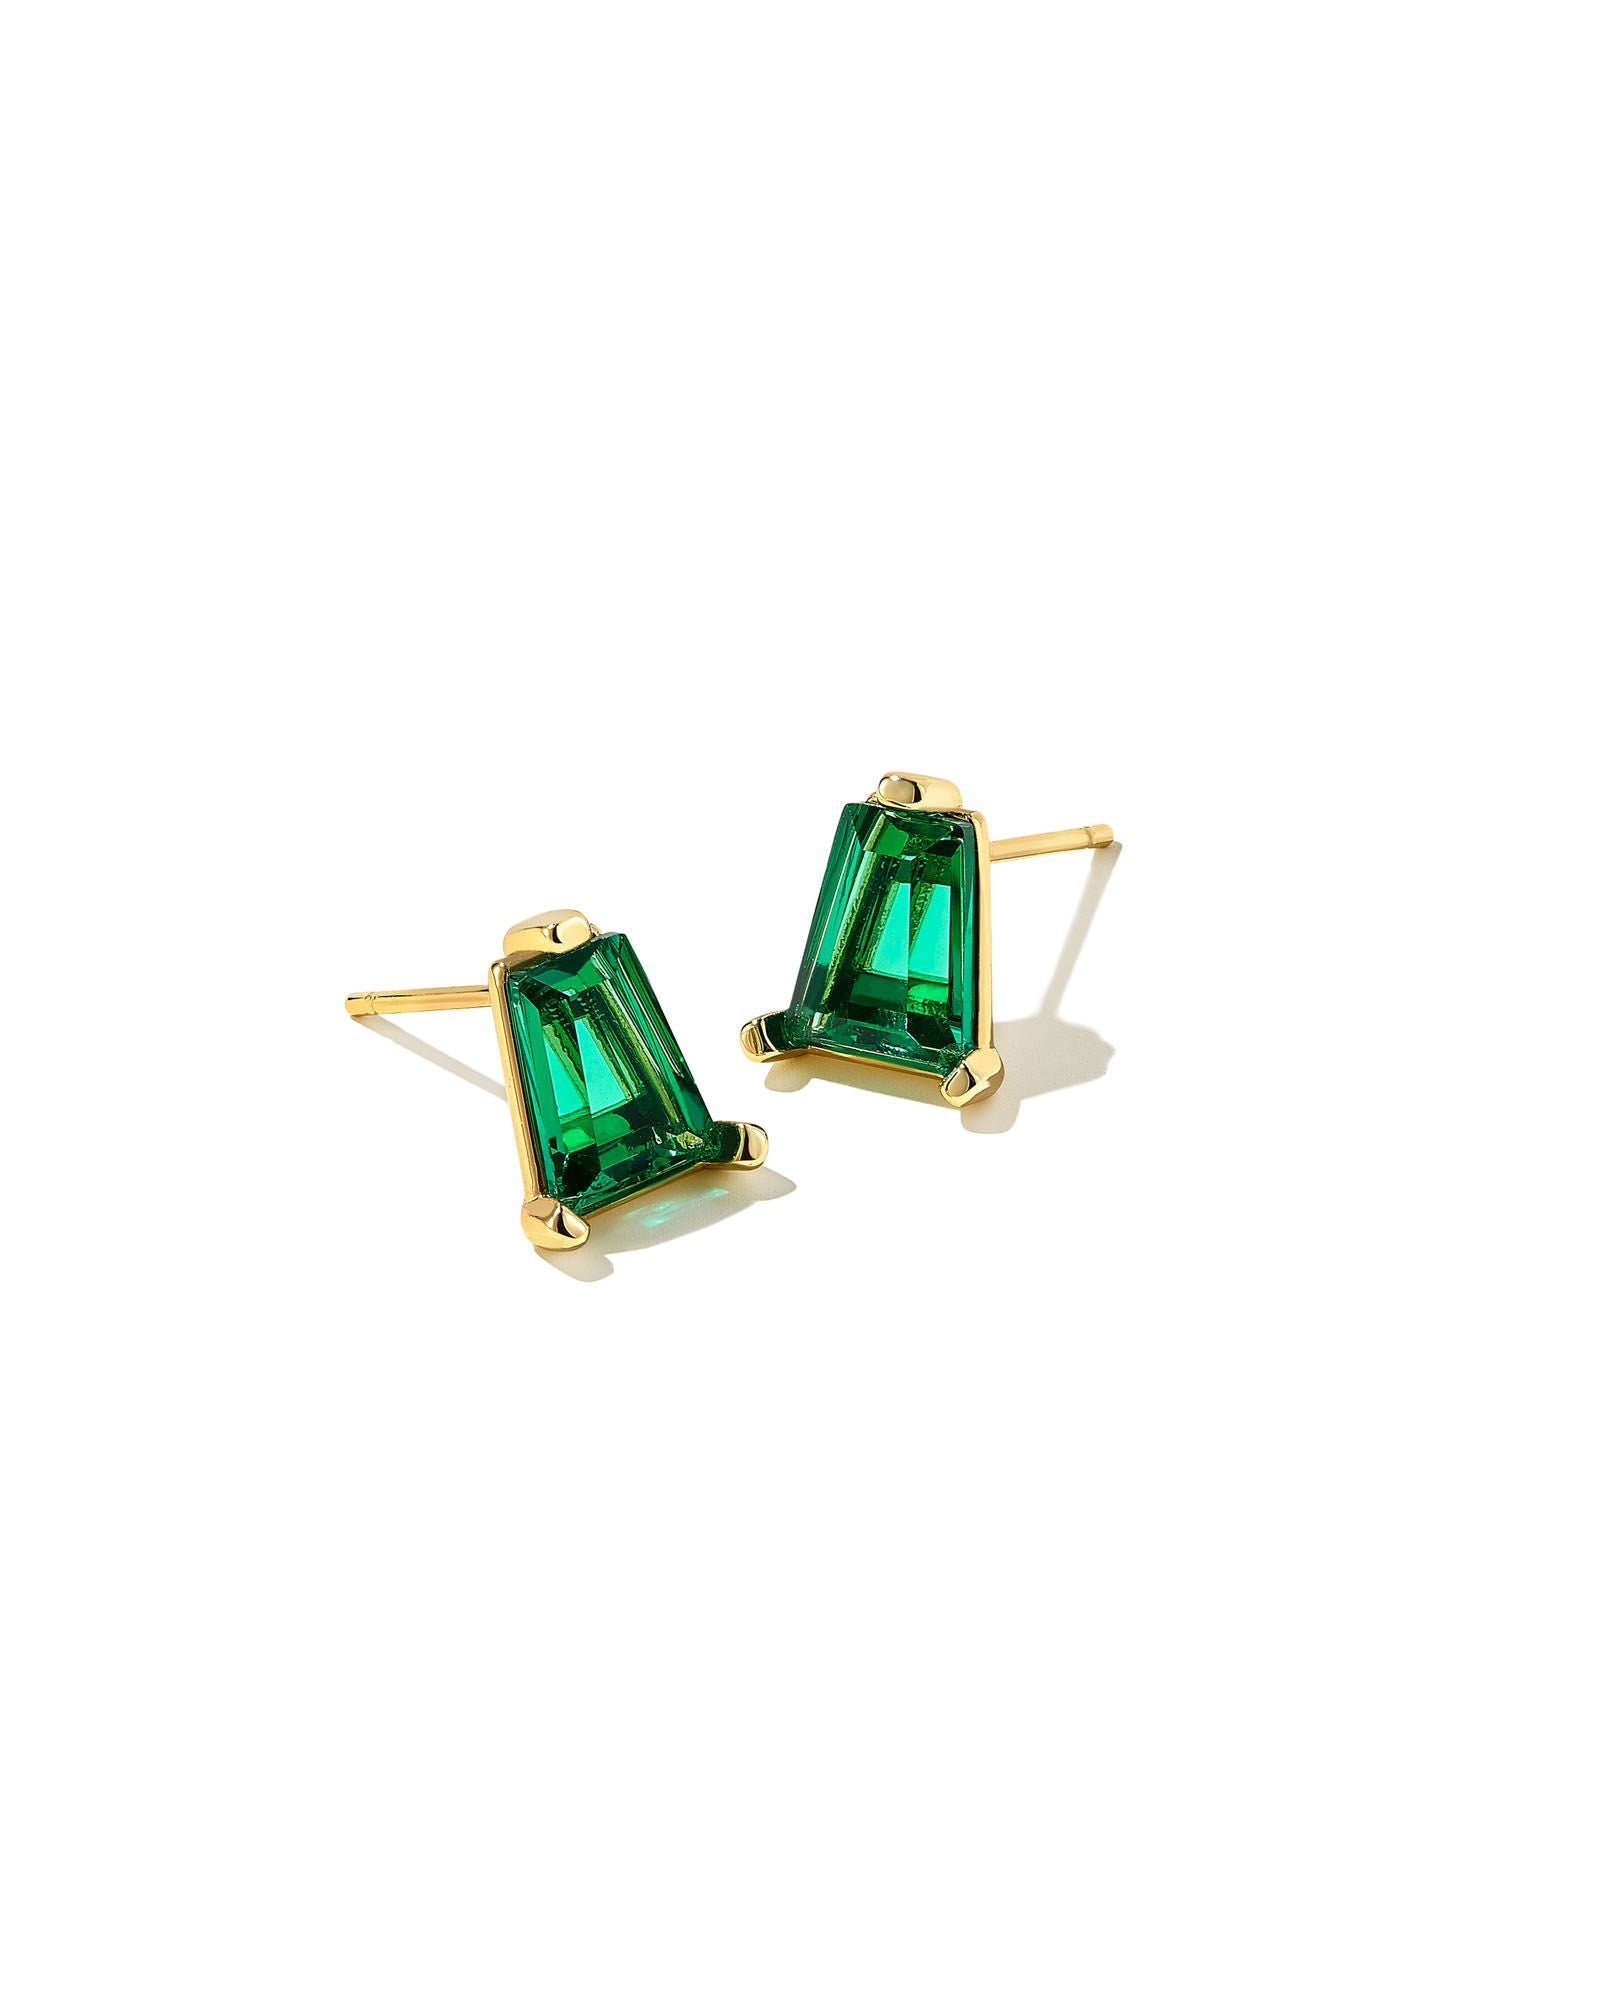 Blair Stud Earrings in Gold Emerald Crystal